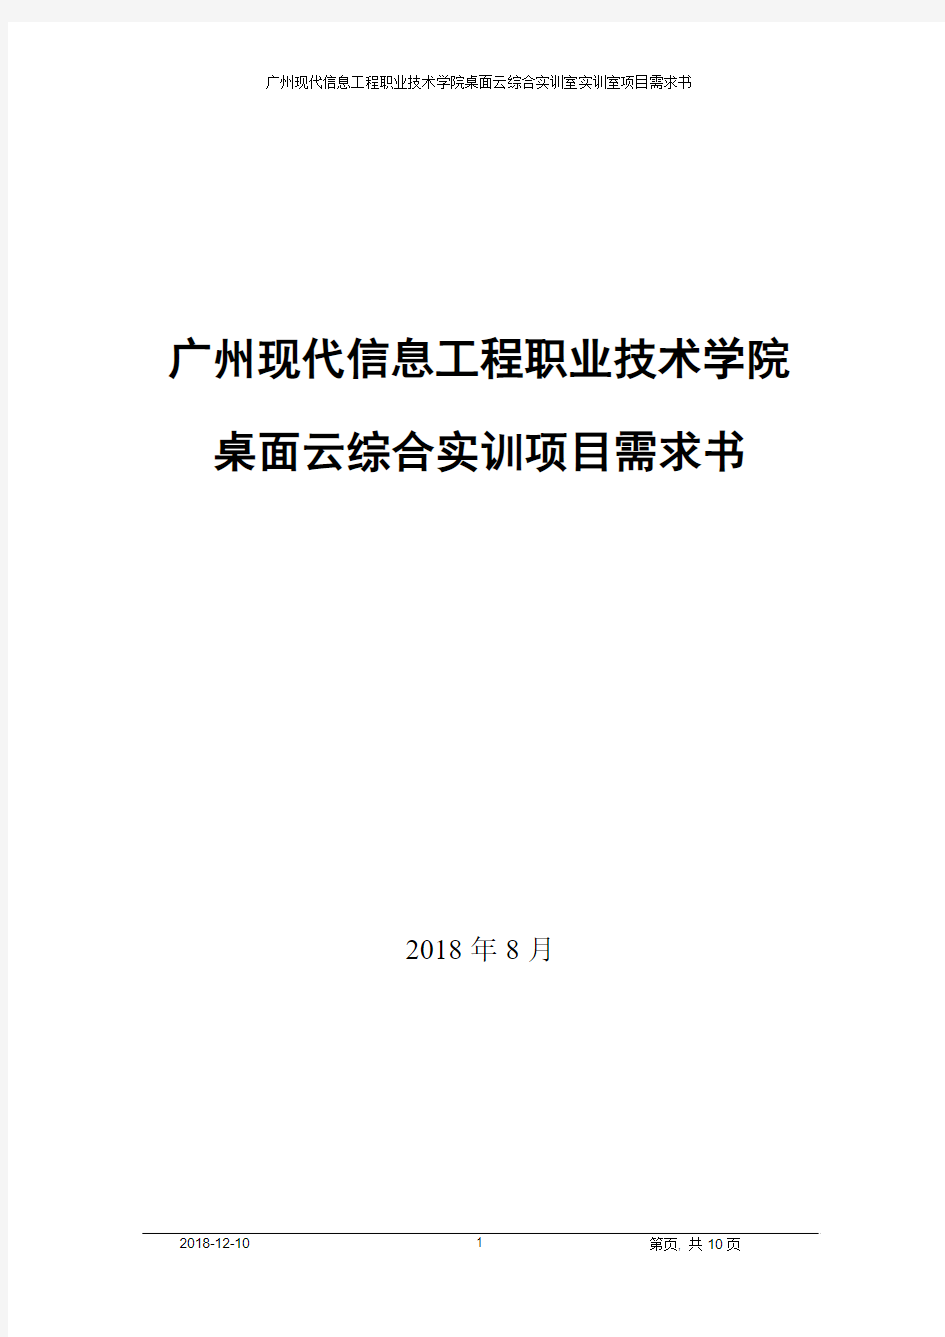 桌面云综合实训项目需求书-广州现代信息工程职业技术学院